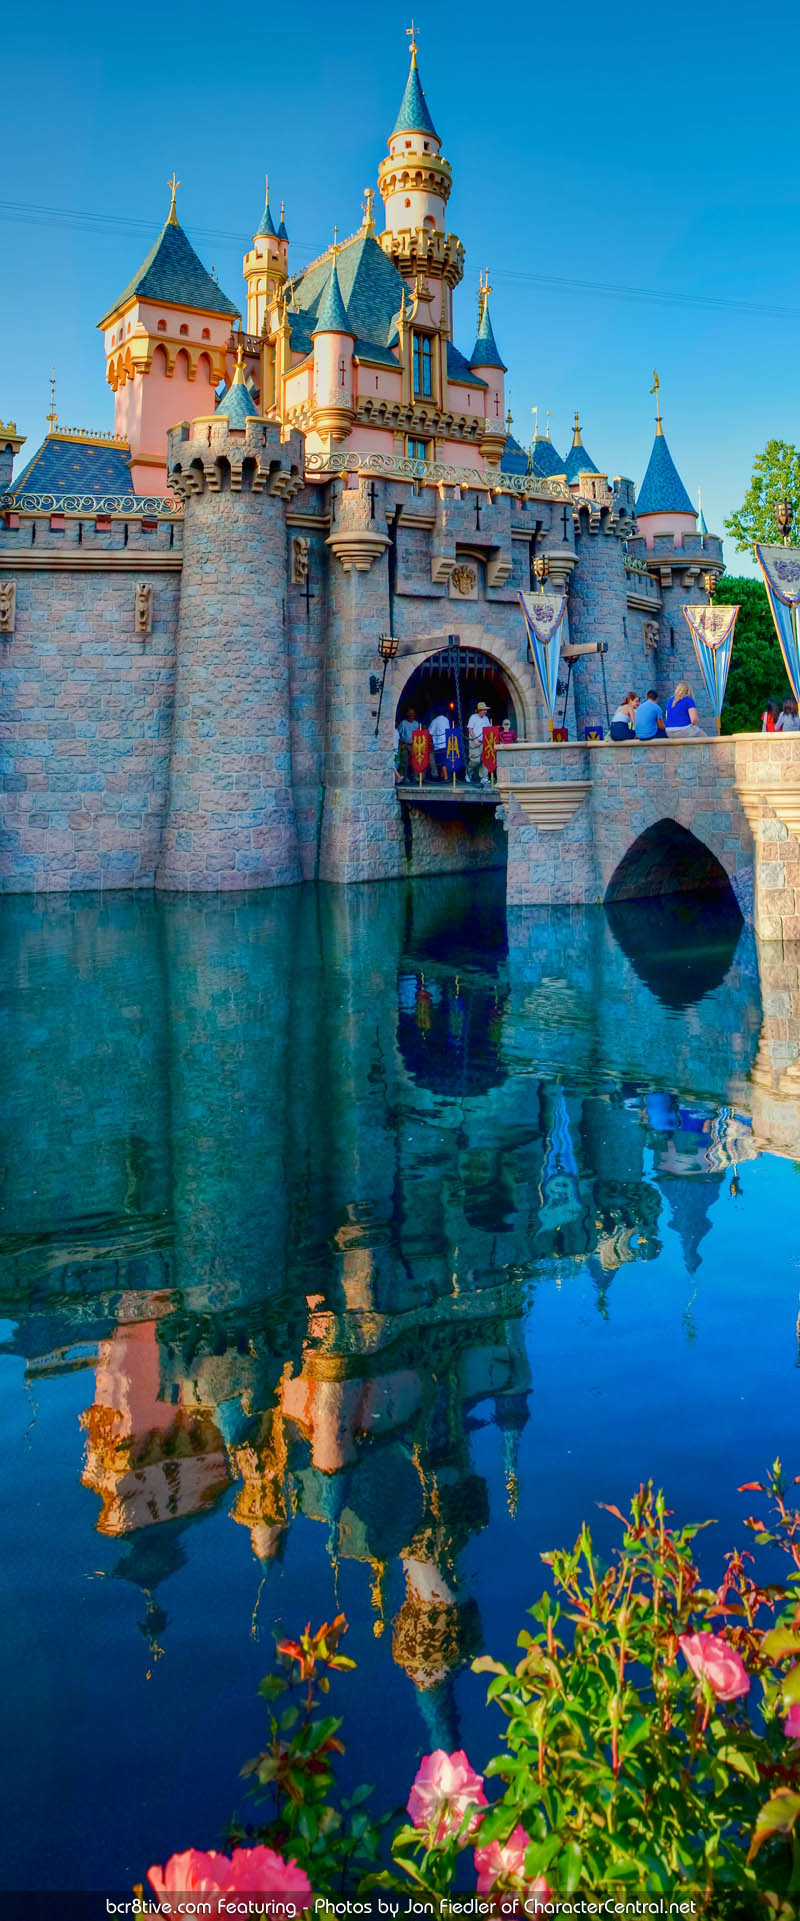 Disneyland Park, Disneyland Resort, Anaheim, CA